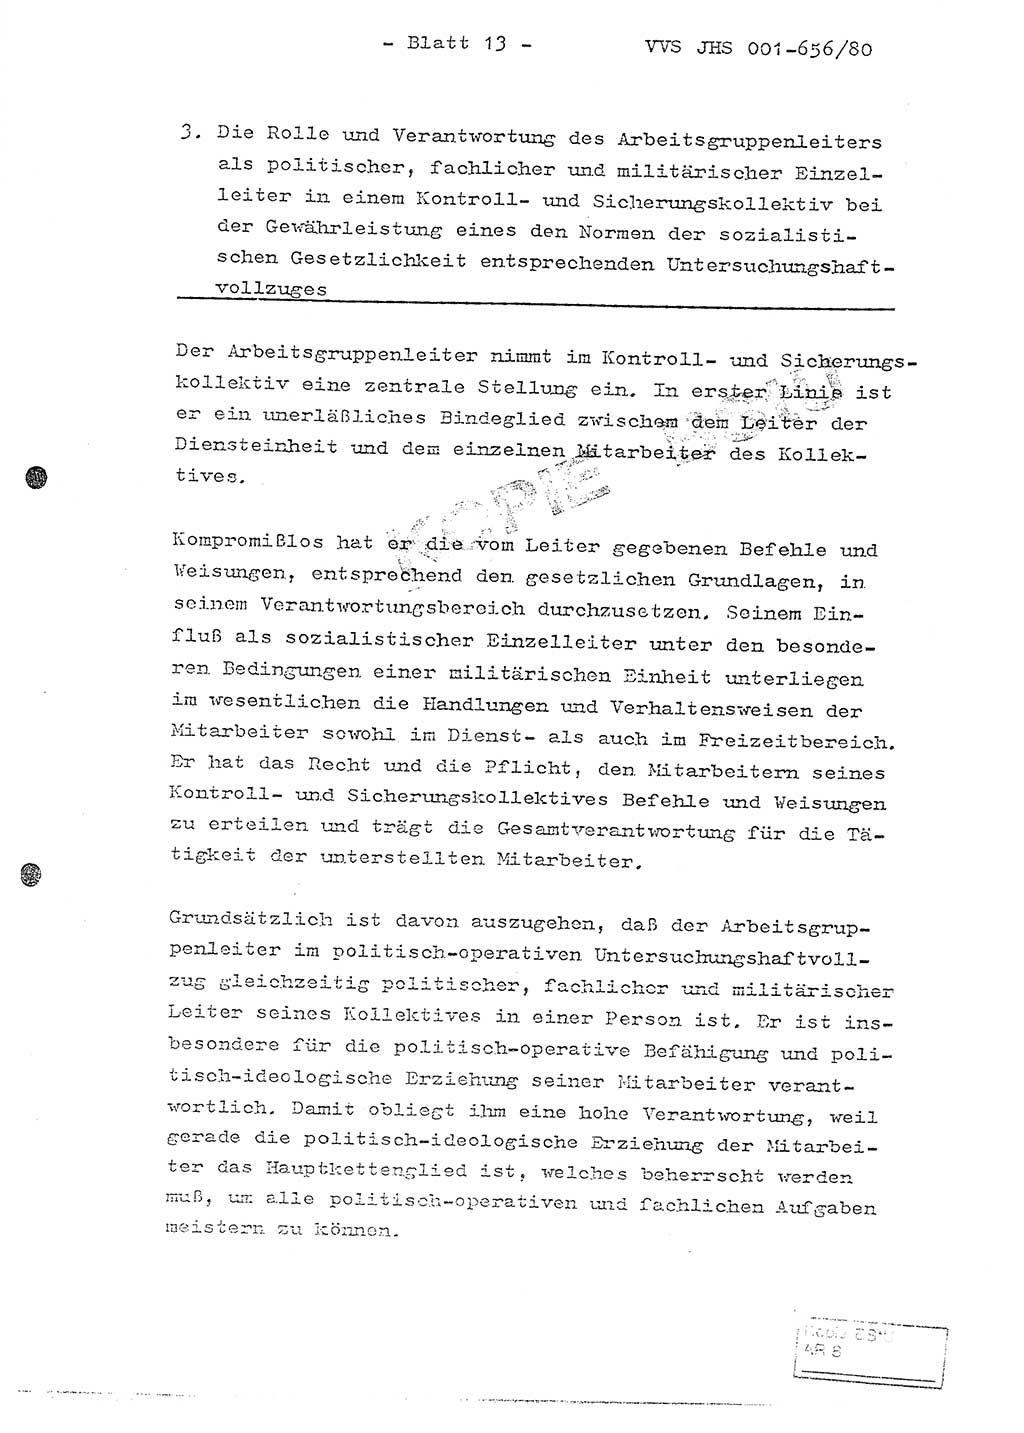 Fachschulabschlußarbeit Unterleutnant Christian Kätzel (Abt. ⅩⅣ), Ministerium für Staatssicherheit (MfS) [Deutsche Demokratische Republik (DDR)], Juristische Hochschule (JHS), Vertrauliche Verschlußsache (VVS) 001-656/80, Potsdam 1980, Blatt 13 (FS-Abschl.-Arb. MfS DDR JHS VVS 001-656/80 1980, Bl. 13)